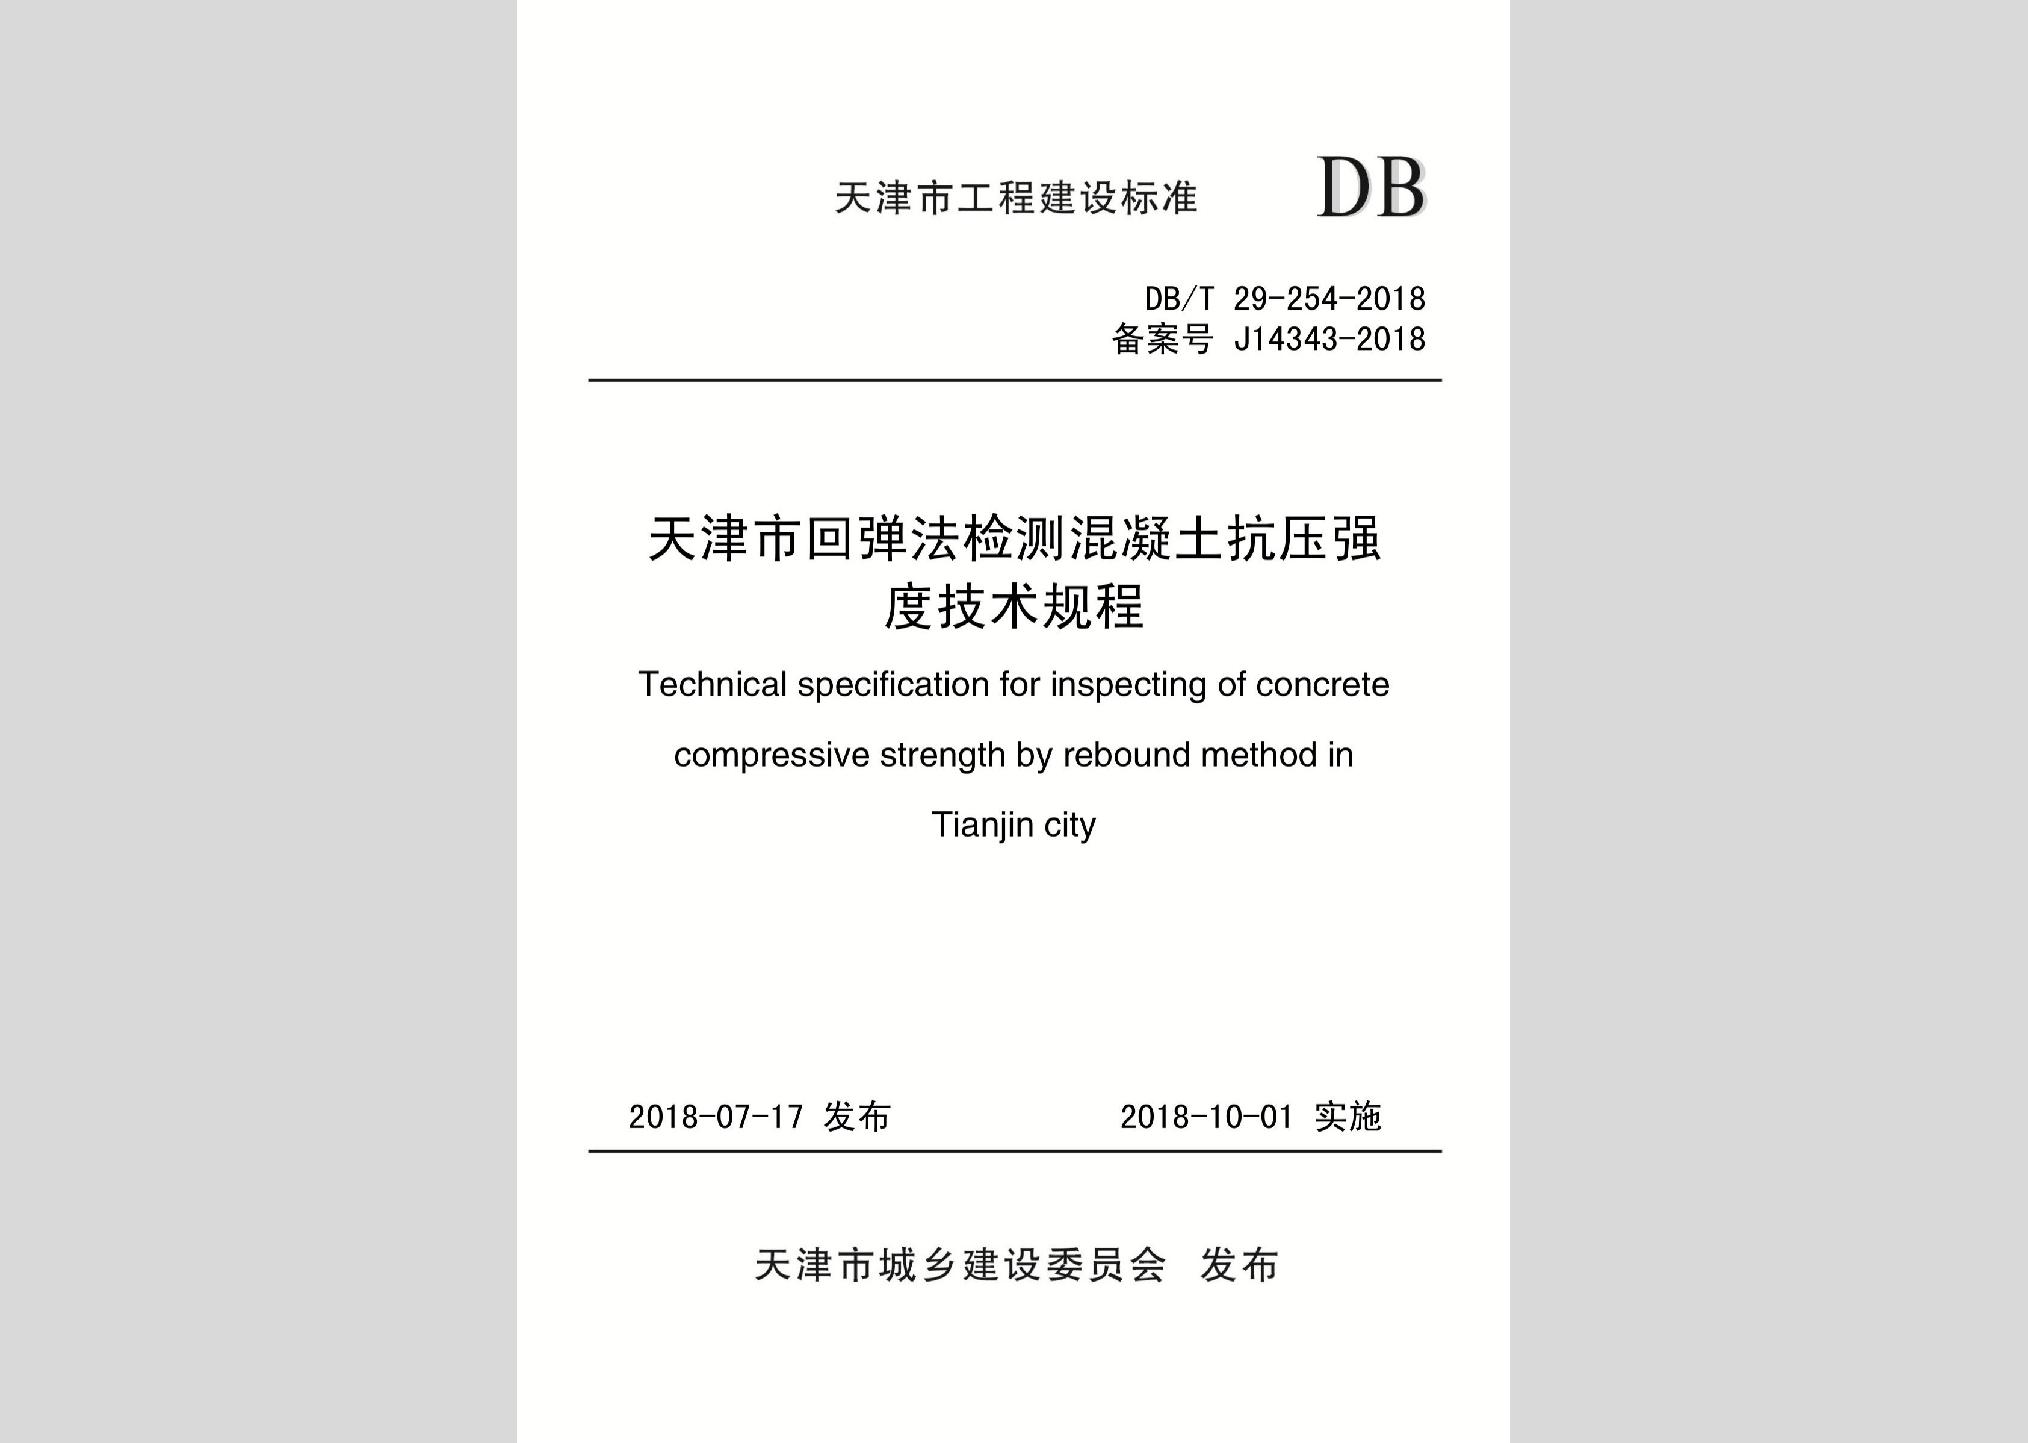 DB/T29-254-2018：天津市回弹法检测混凝土抗压强度技术规程